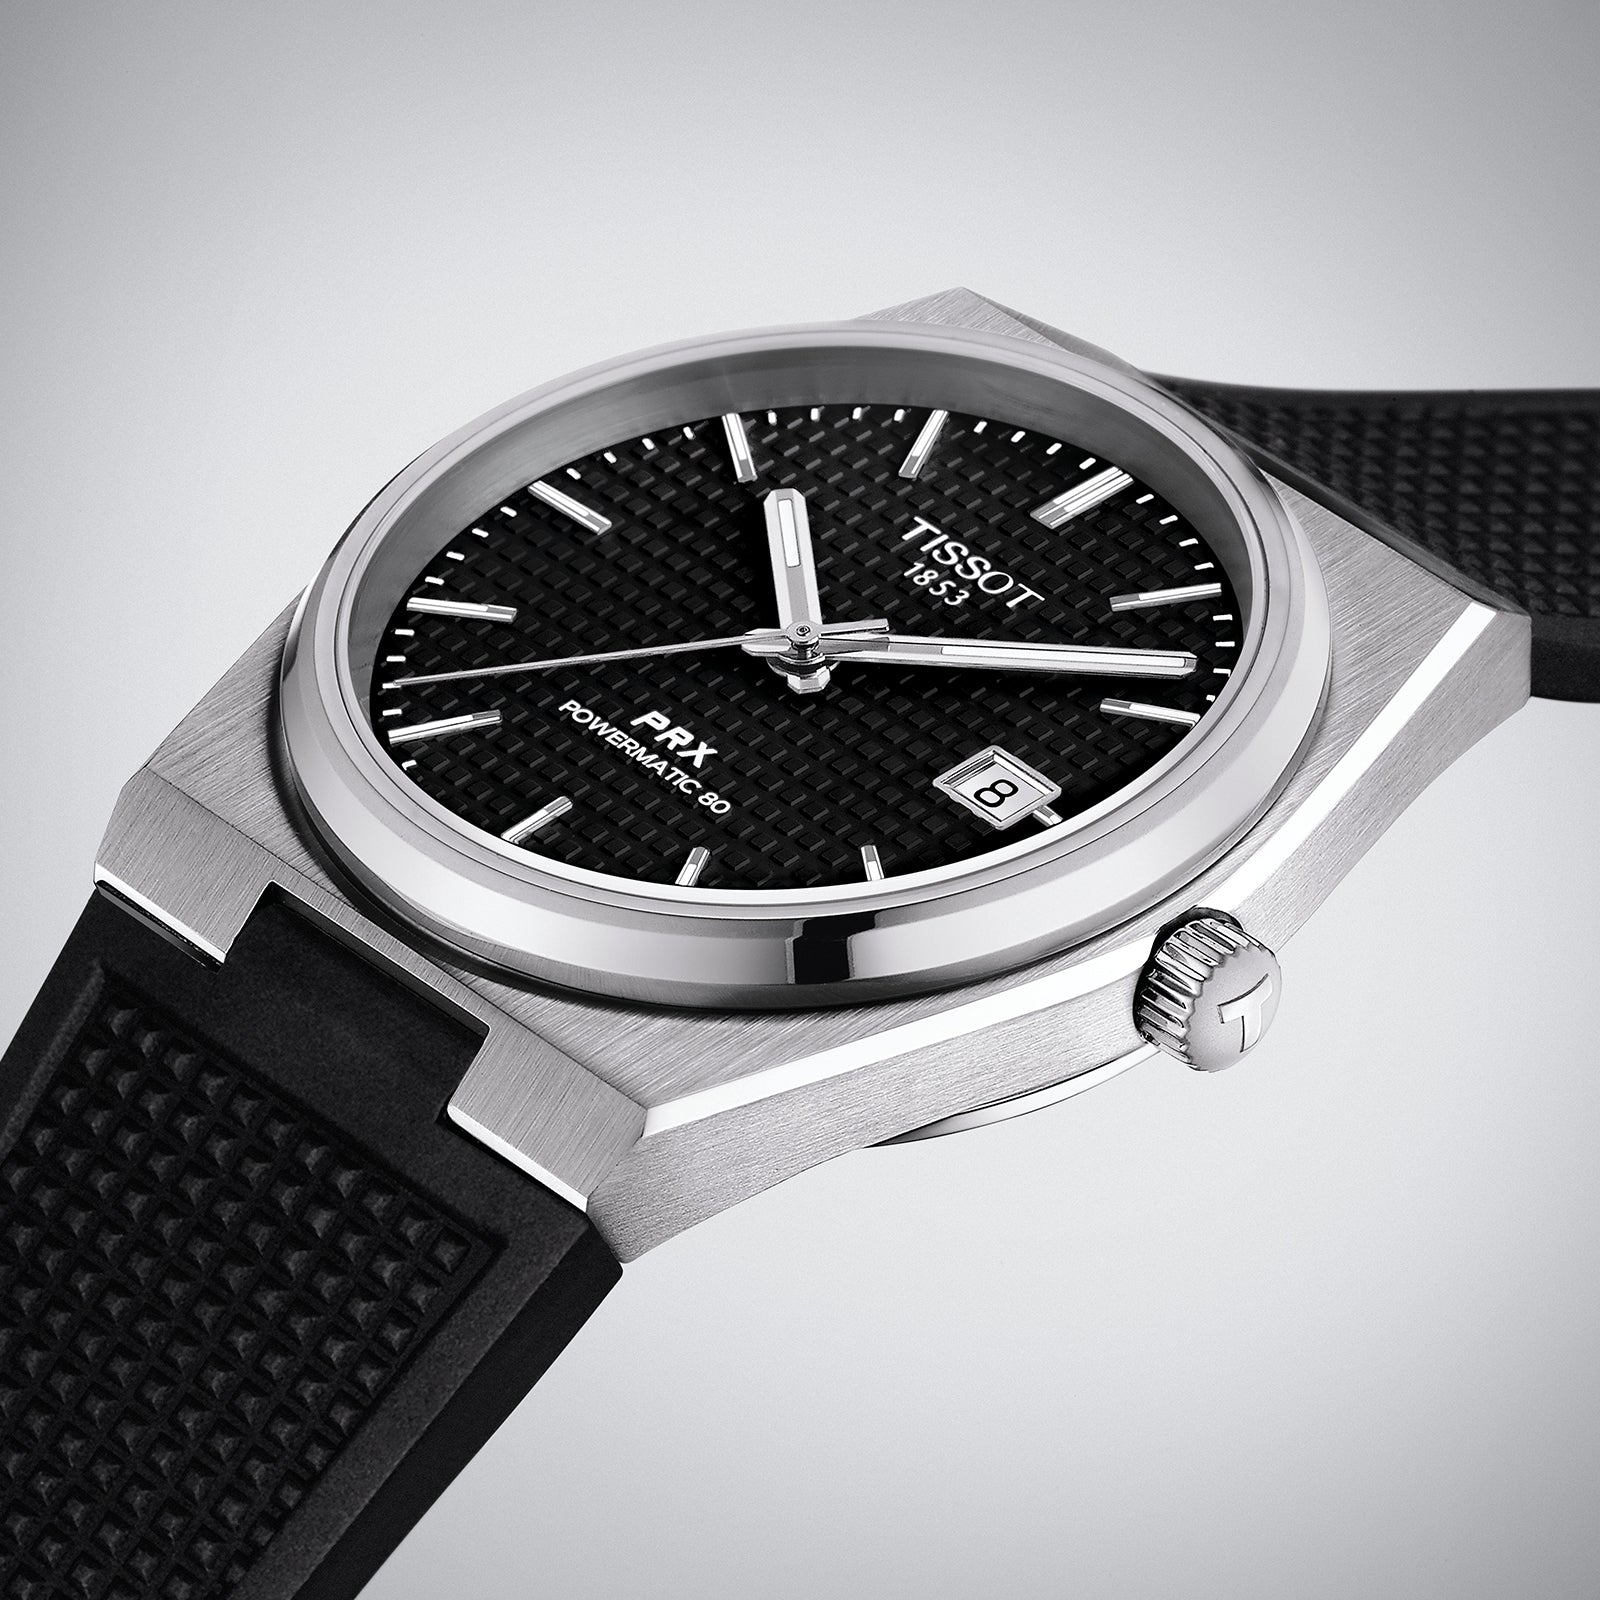 Tissot PRX Quartz Black Dial Black Leather Strap Watch For Men - T137.410.17.051.00